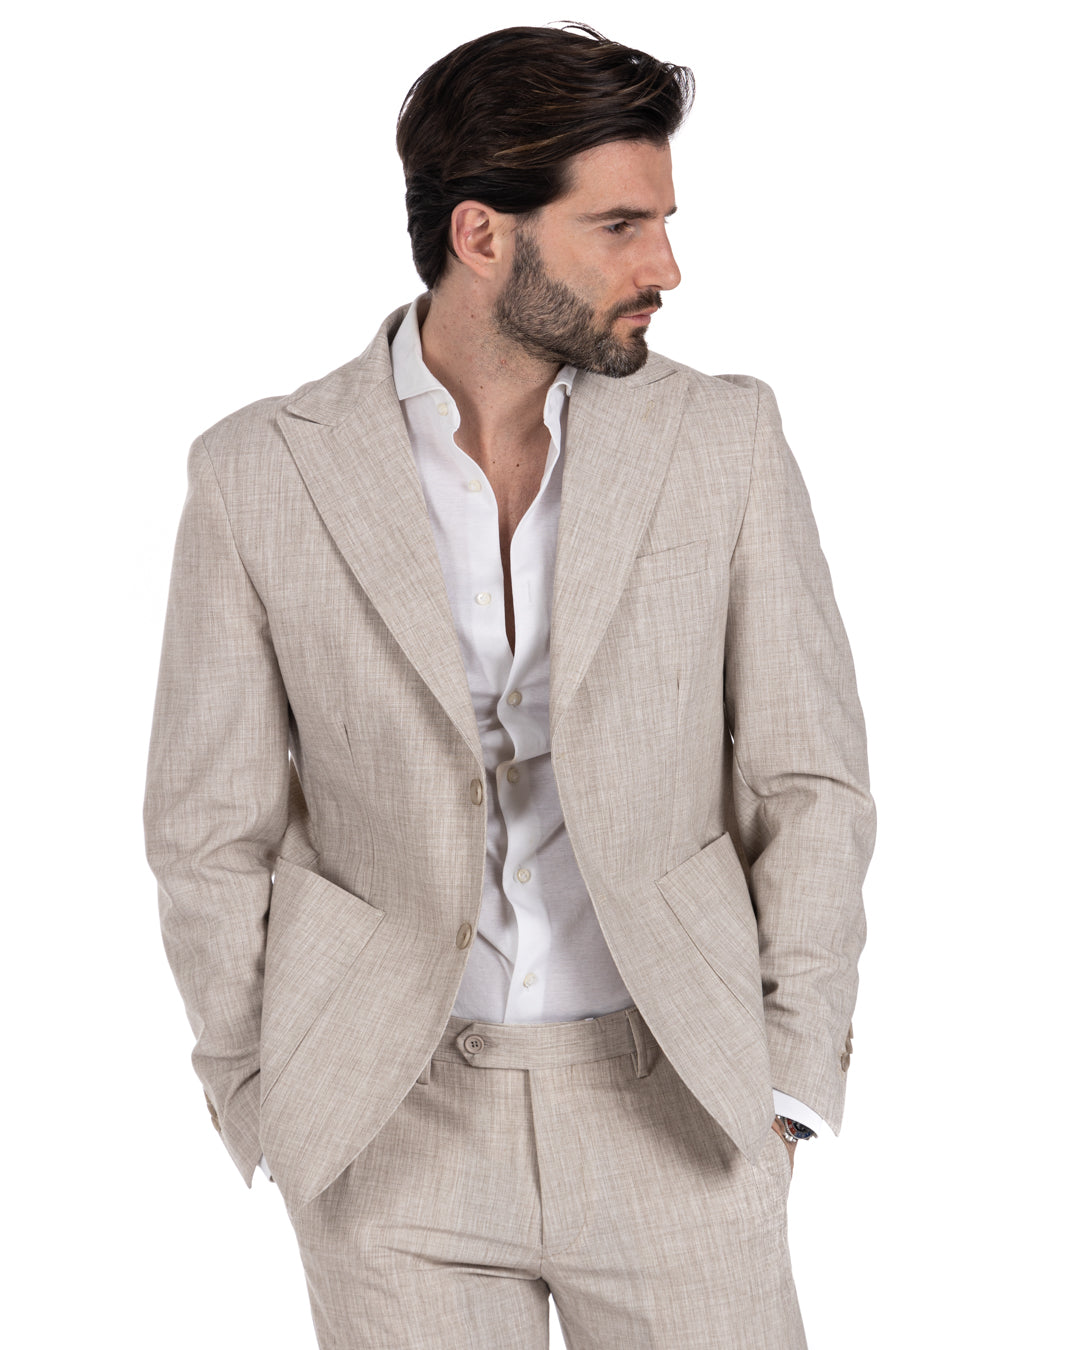 Lipari - beige single-breasted suit